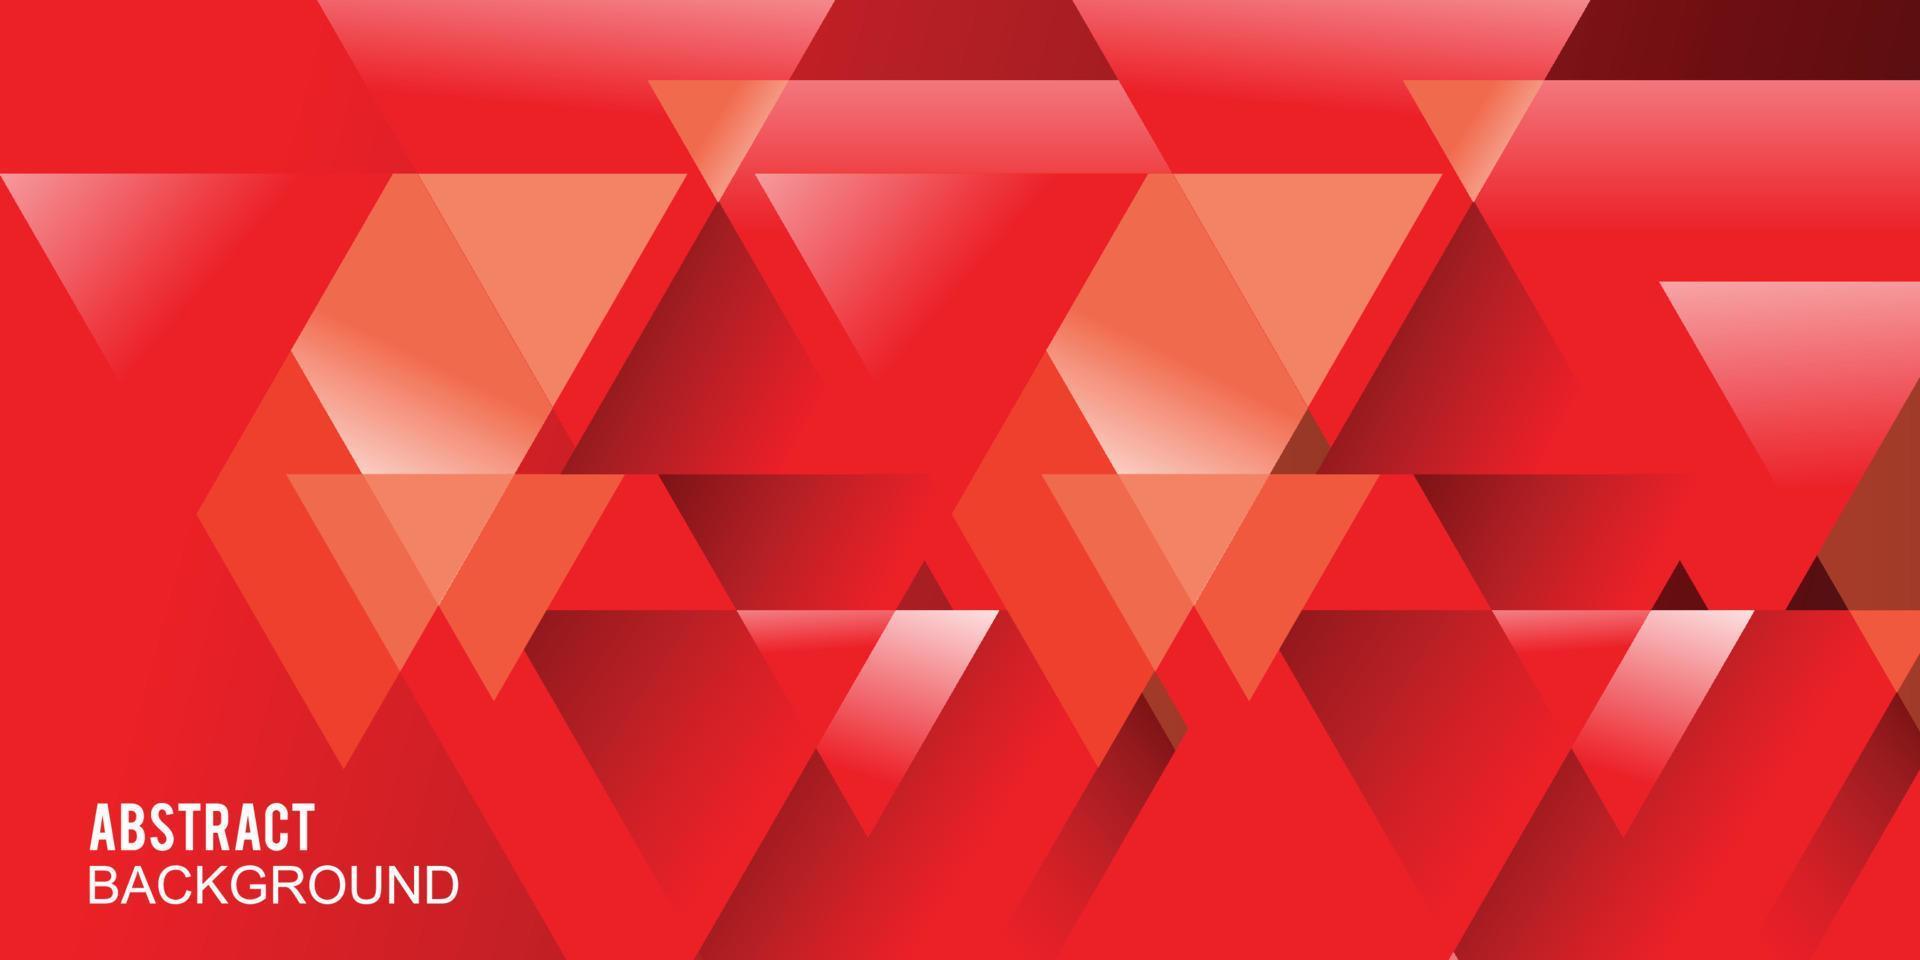 disegno vettoriale astratto rosso per banner copertina libro flayer e altri elementi grafici